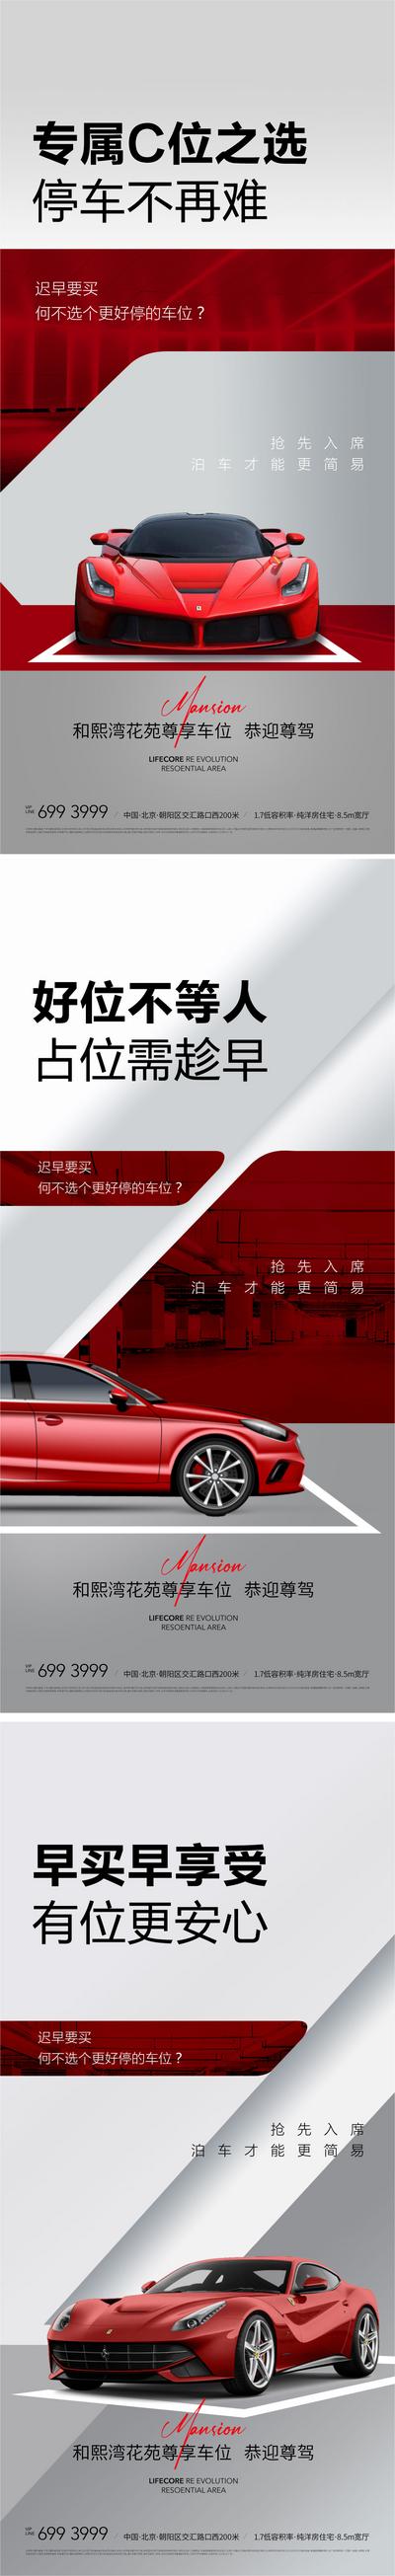 南门网 海报 房地产 汽车 车位 开盘 认筹 红色 高级灰 简约 系列